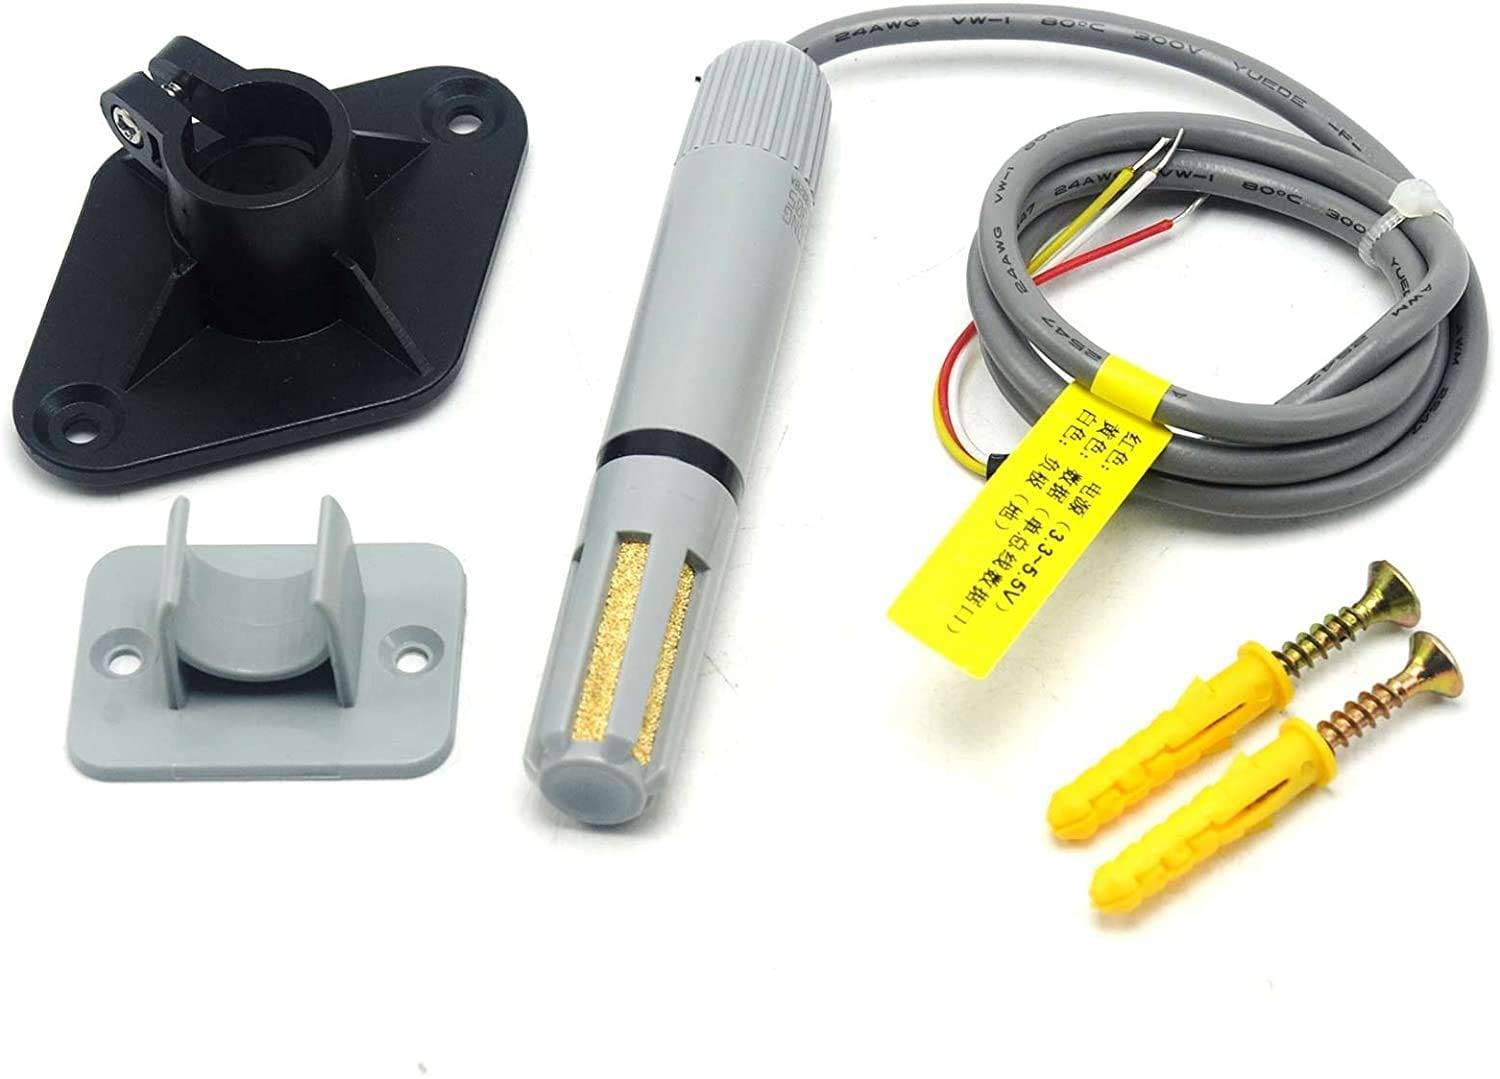 AM2305 Digital Humidity & Temperature Sensor, Output Digital Signal High-Temperature Humidity Sensors- RS2581 - REES52